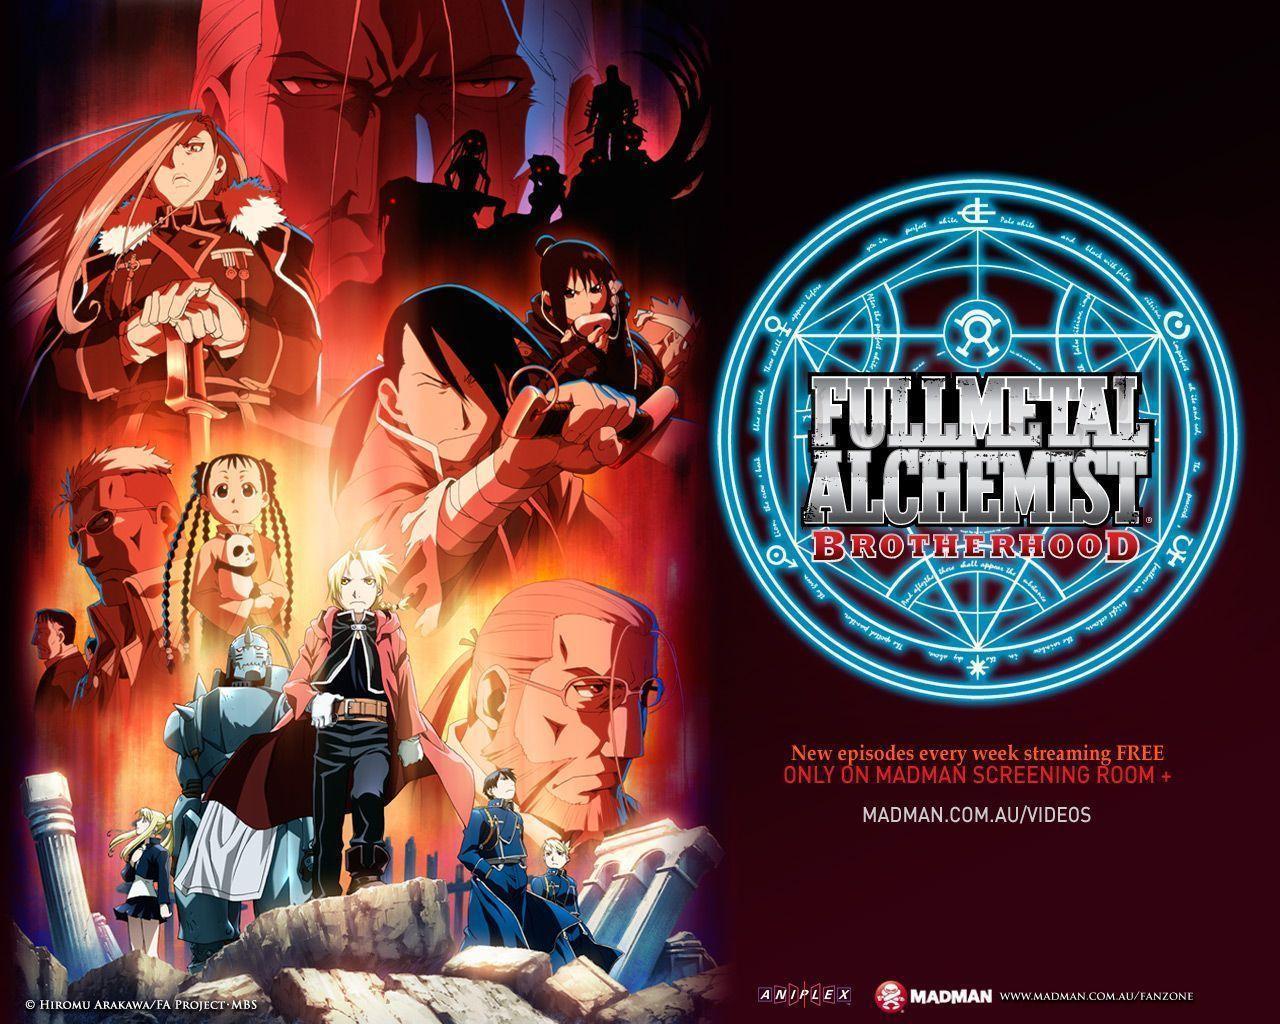 Wallpaper For > Fullmetal Alchemist Brotherhood Wallpaper Edward HD